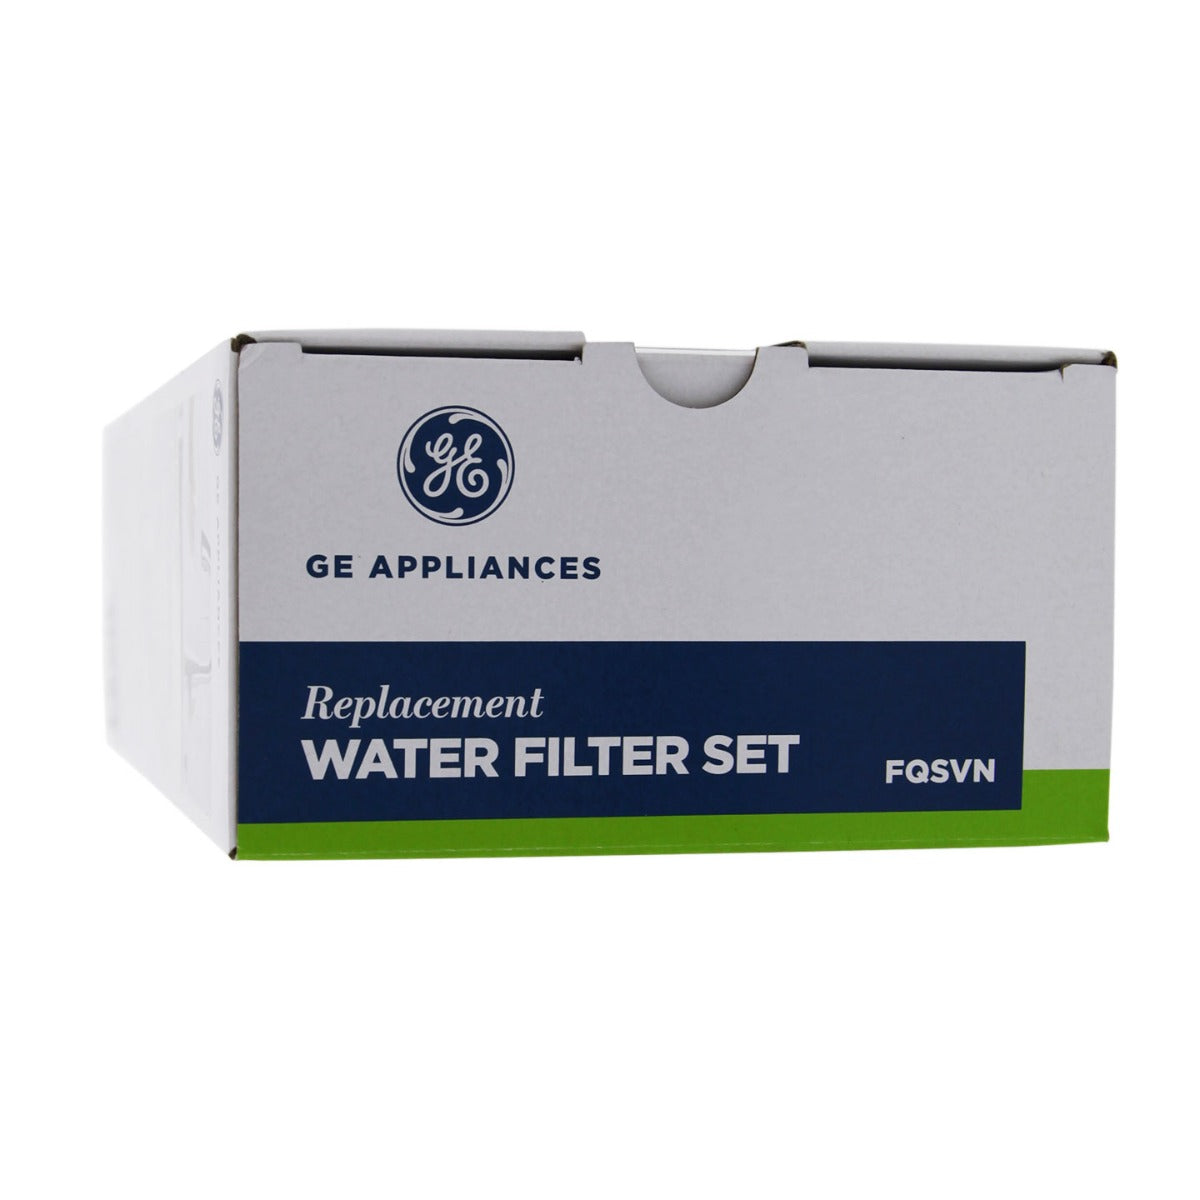 GE FQSVN Under Sink Water Filter Set (2 Filters)